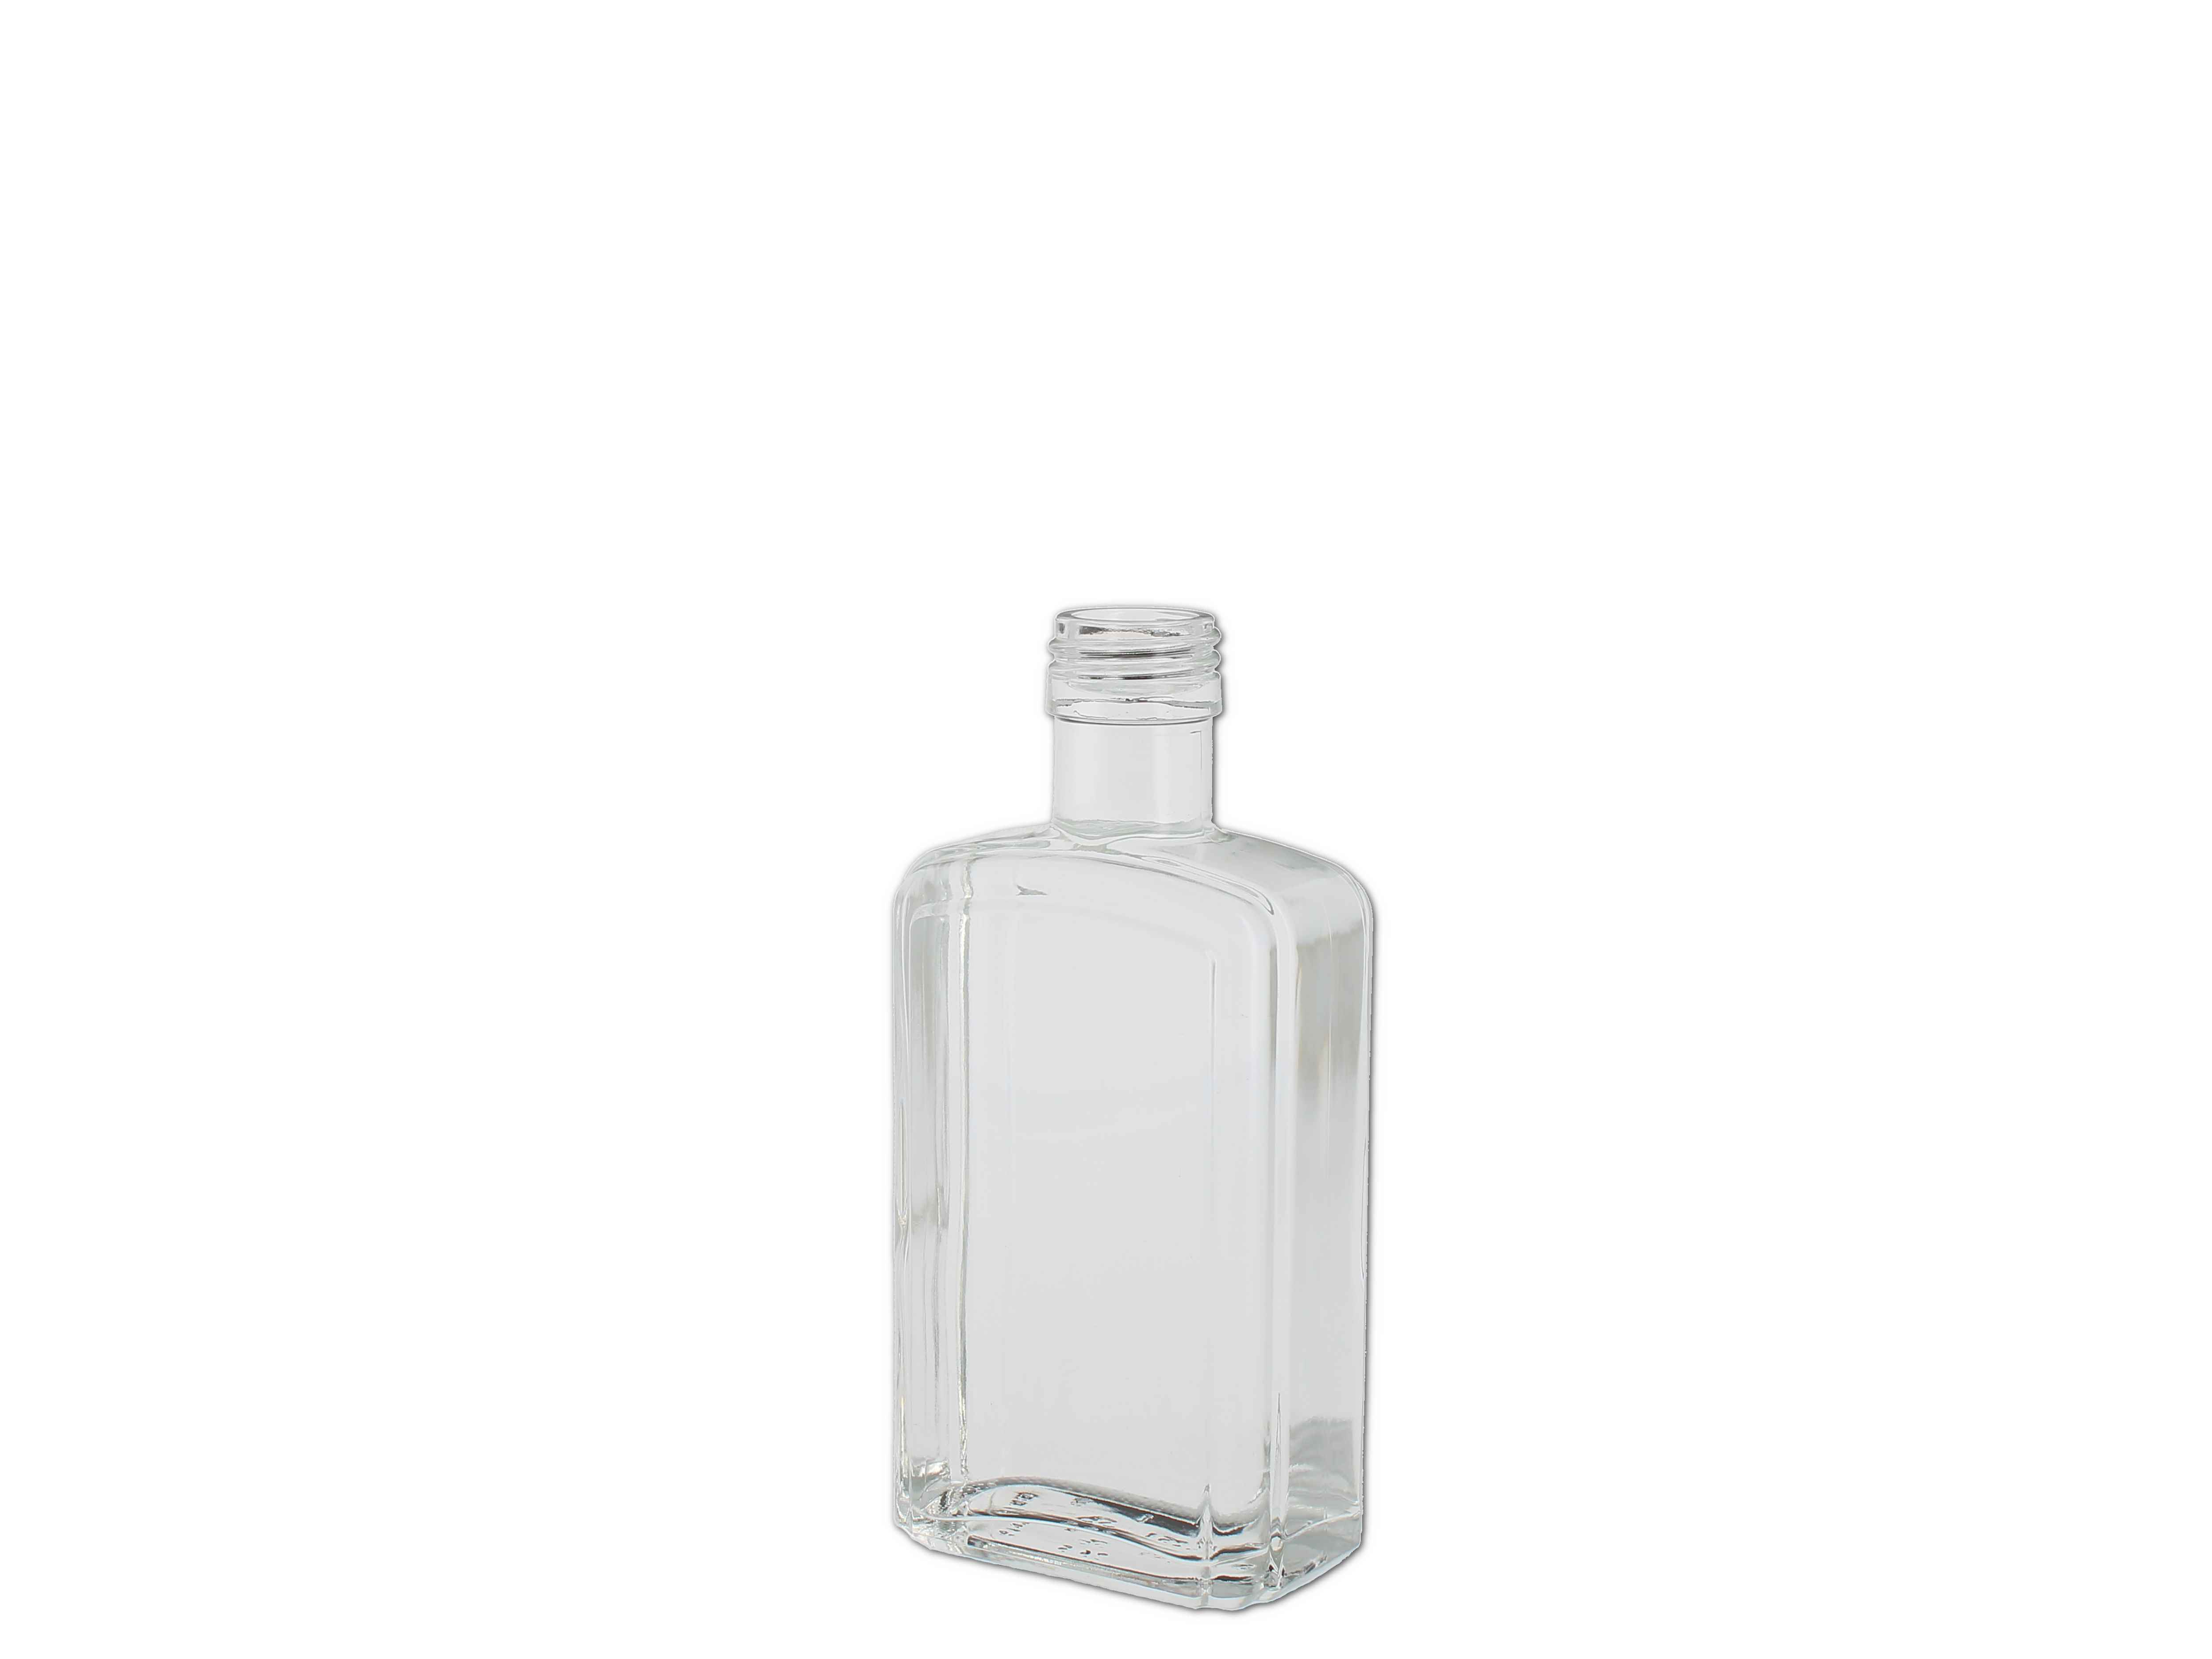    Formflasche weiß, Typ 318 (91318) - PP28 - 250ml